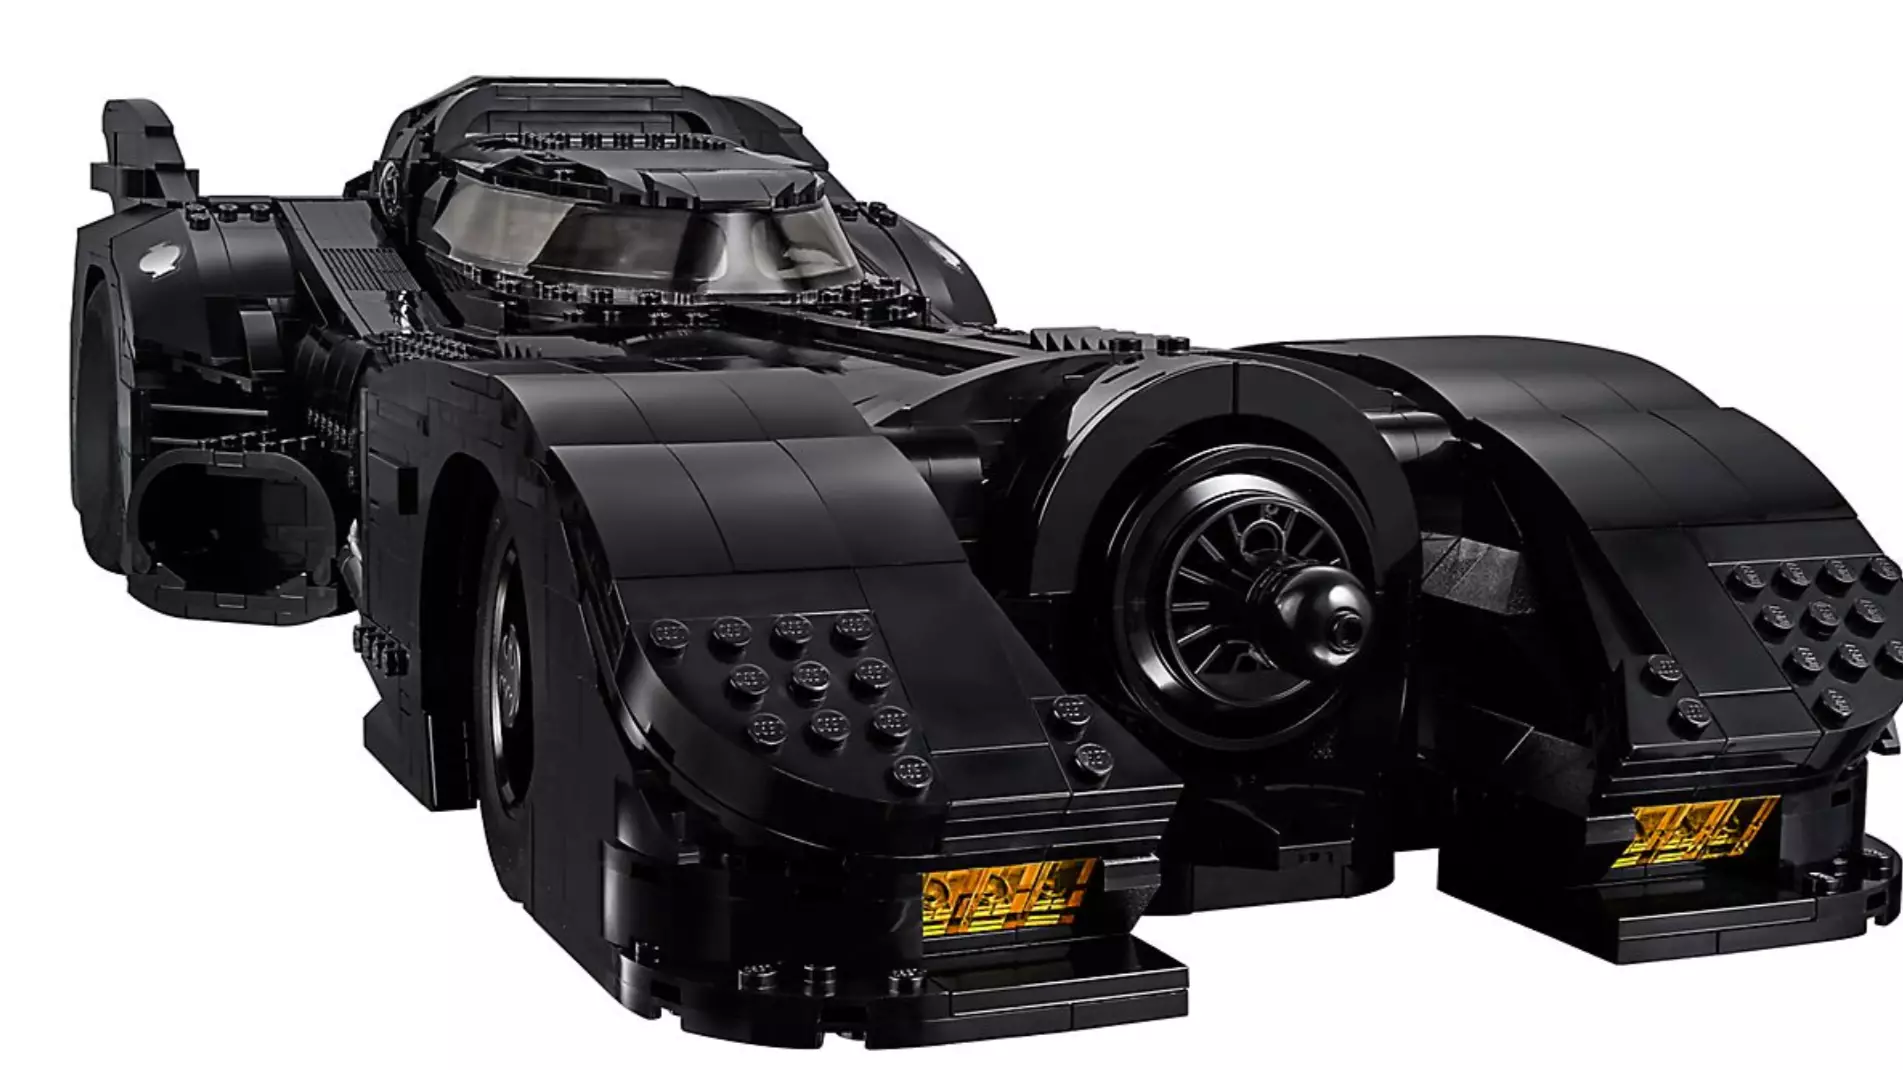 Lego Release 3,306 Piece Set Of Original Batmobile